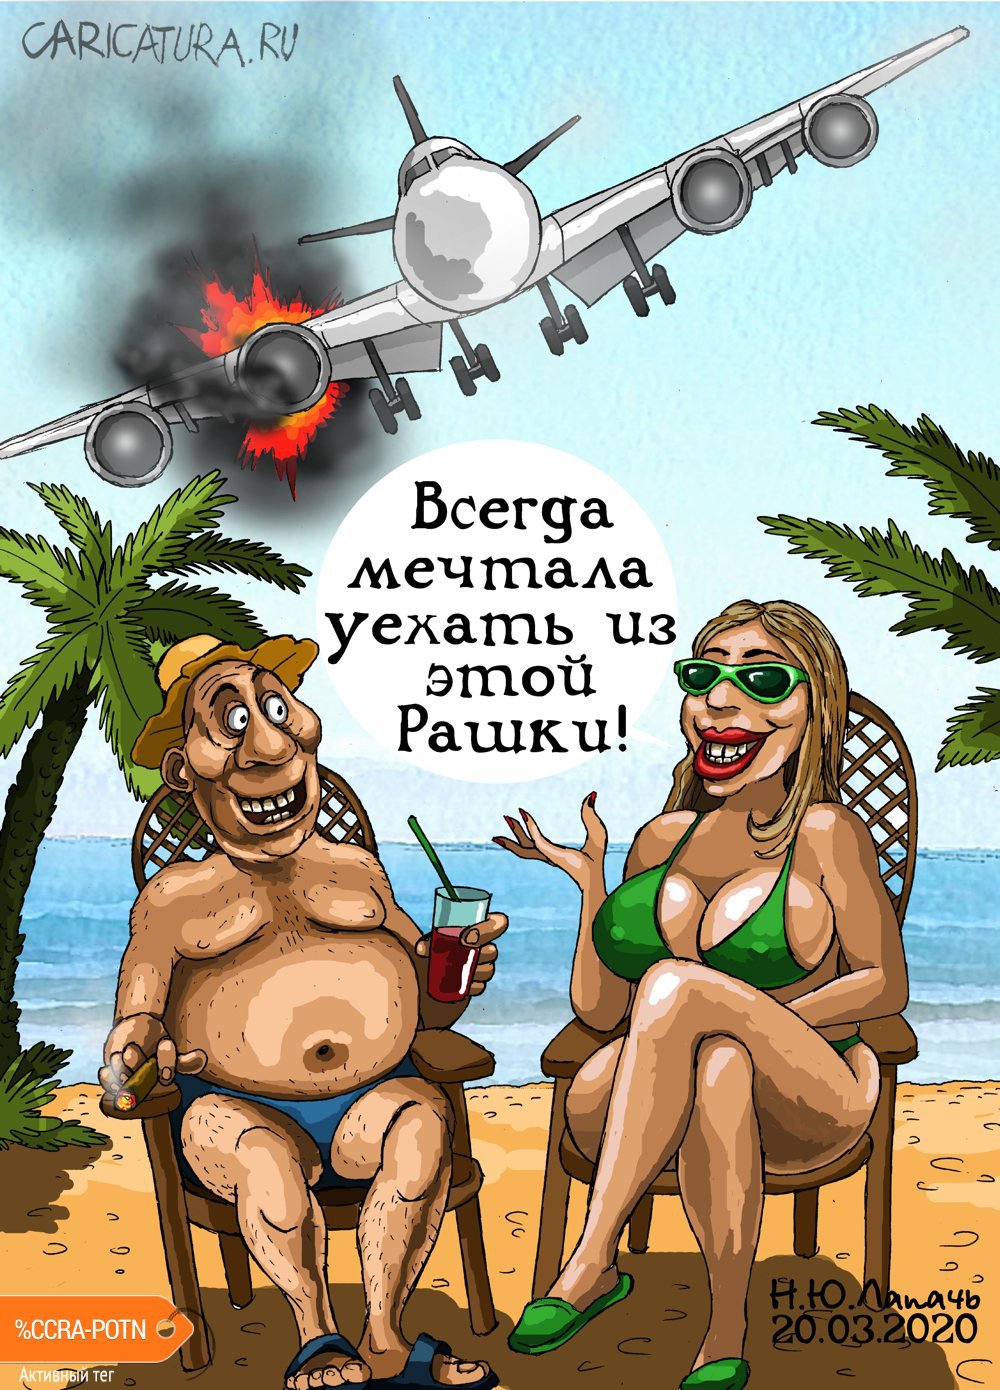 Карикатура "Аварийная посадка", Теплый Телогрей